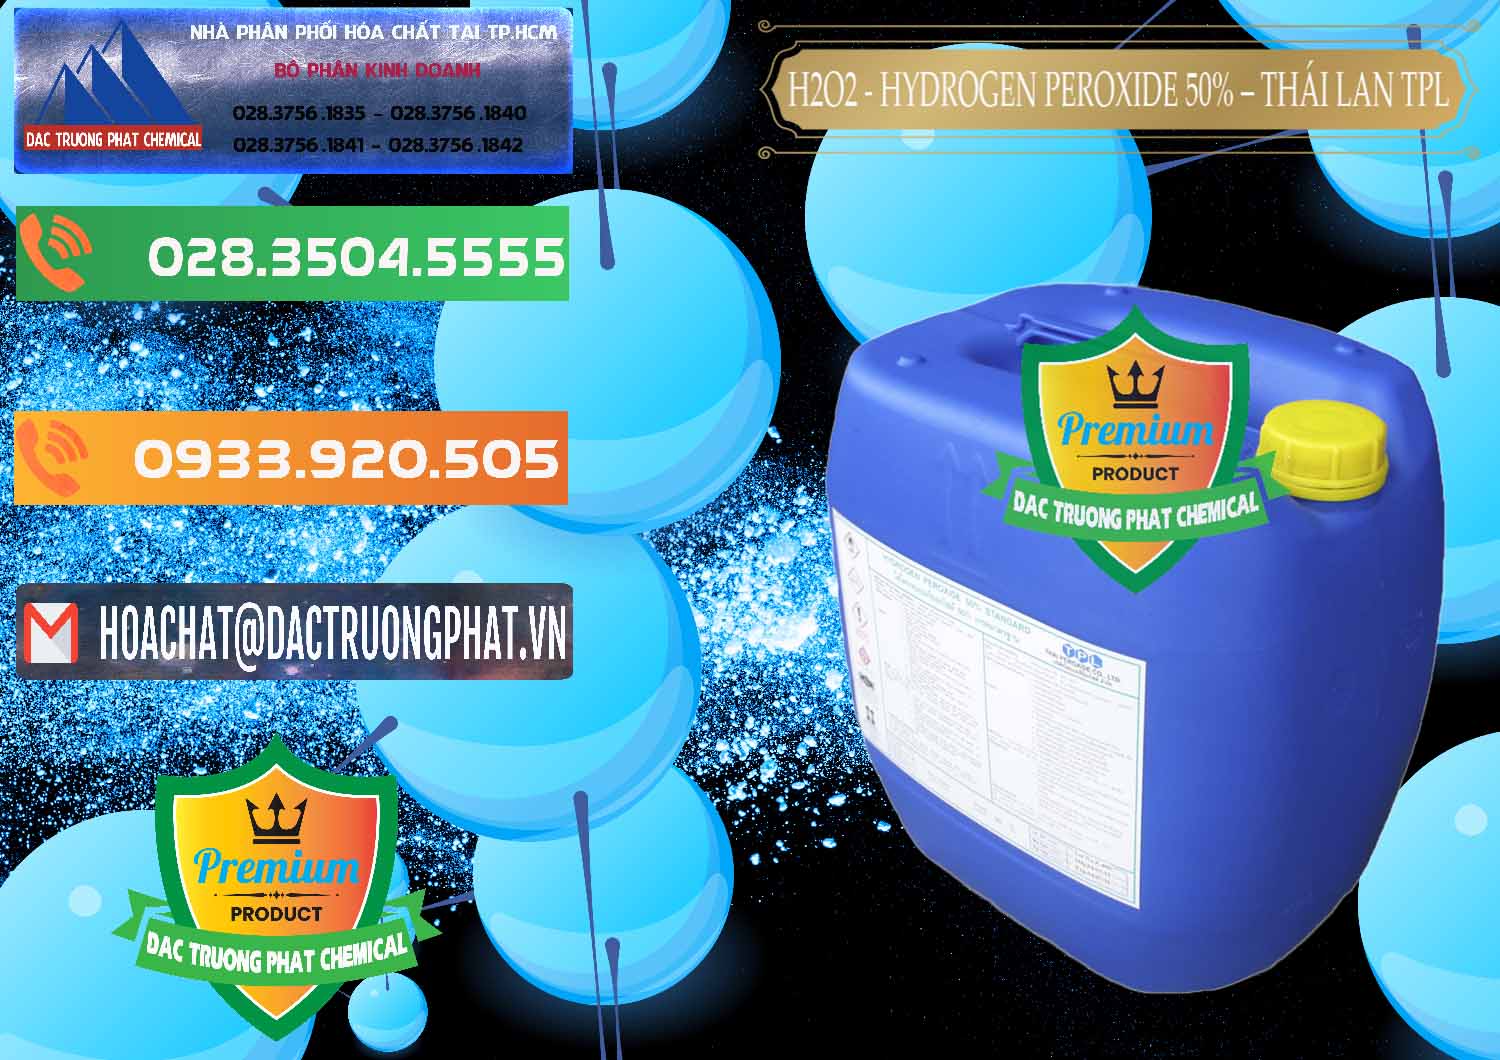 Chuyên cung cấp - bán H2O2 - Hydrogen Peroxide 50% Thái Lan TPL - 0076 - Phân phối _ cung cấp hóa chất tại TP.HCM - hoachatxulynuoc.com.vn